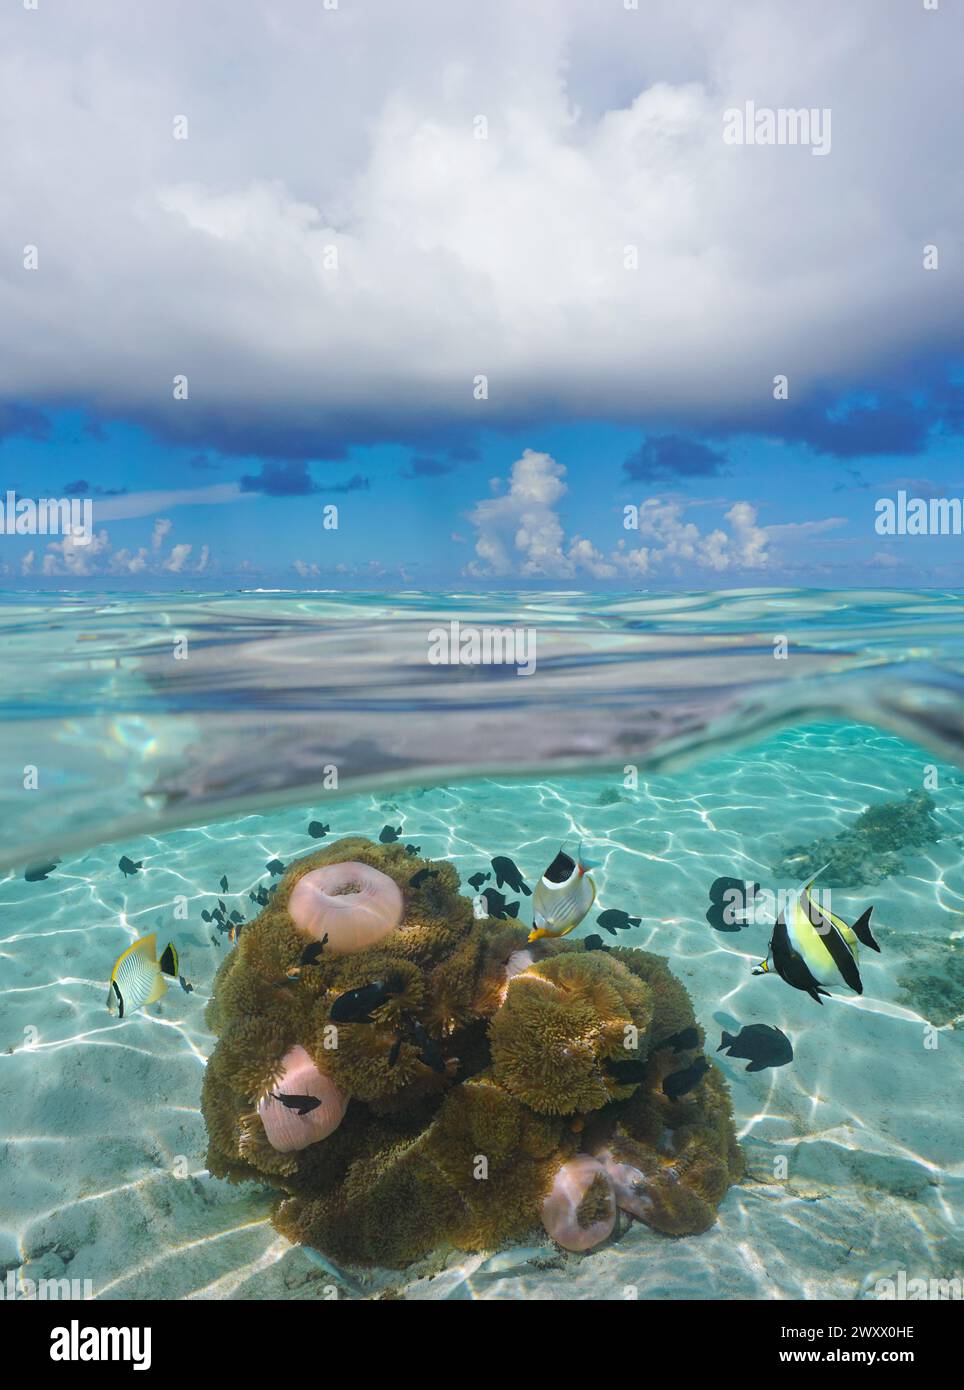 Ciel bleu de paysage marin avec nuages et poissons tropicaux avec anémones de mer sous l'eau, vue divisée sur et sous la surface de l'eau, scène naturelle, océan Pacifique Banque D'Images